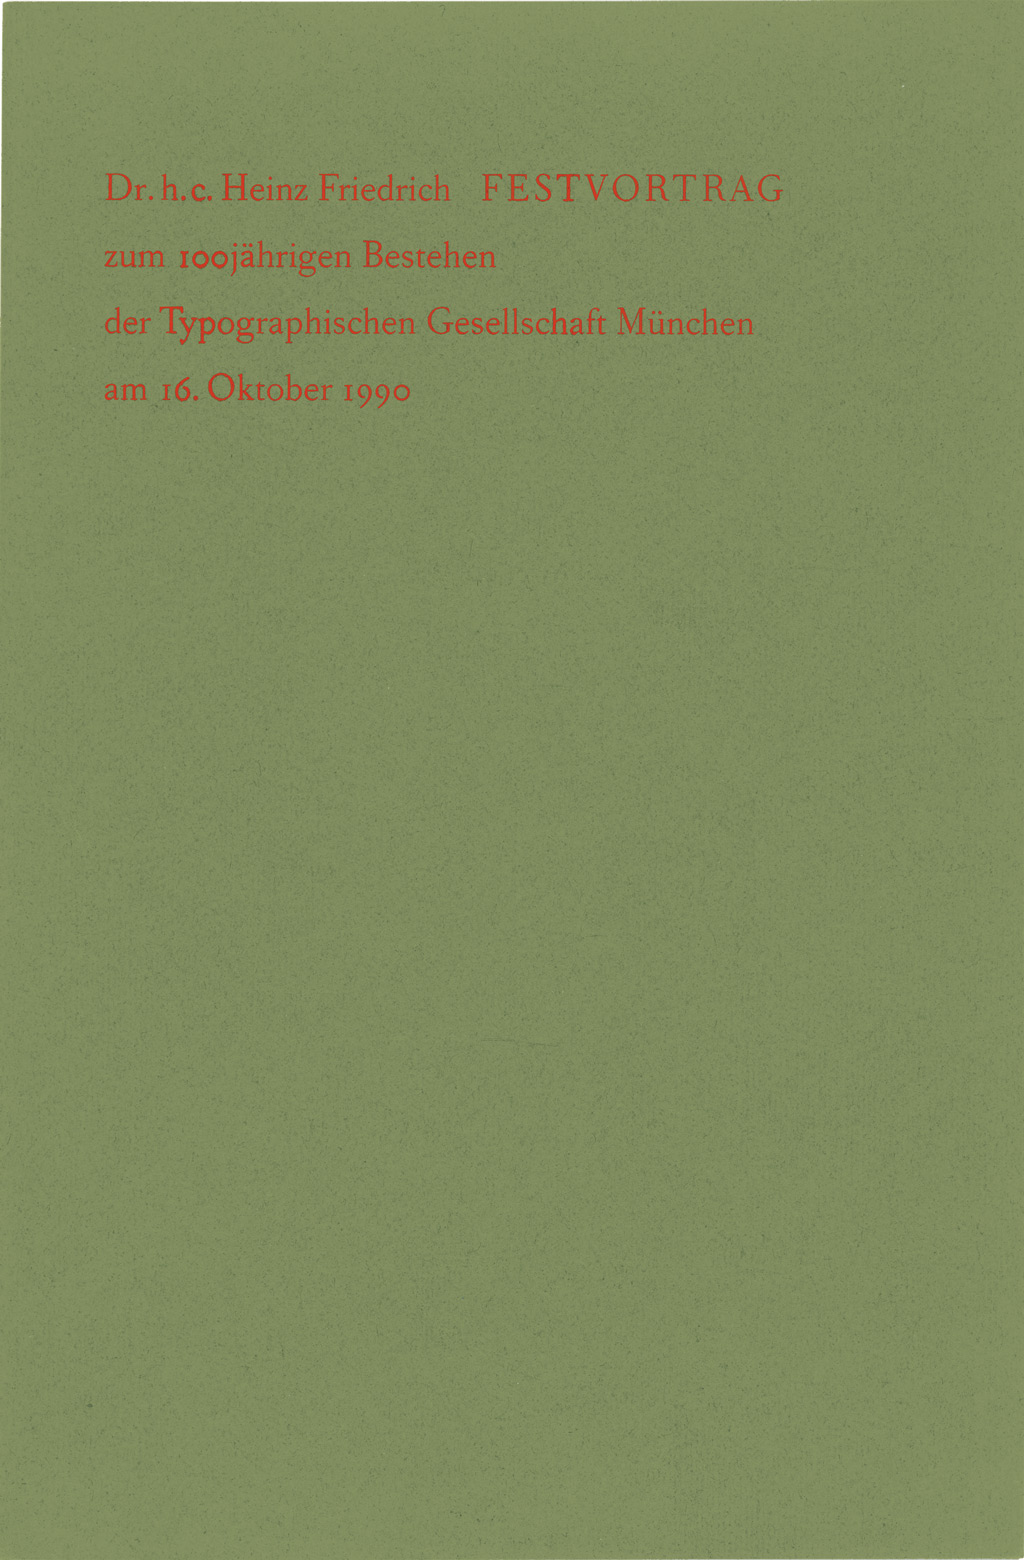 Festvortrag: Zum 100jährigen Bestehen der Typographischen Gesellschaft München